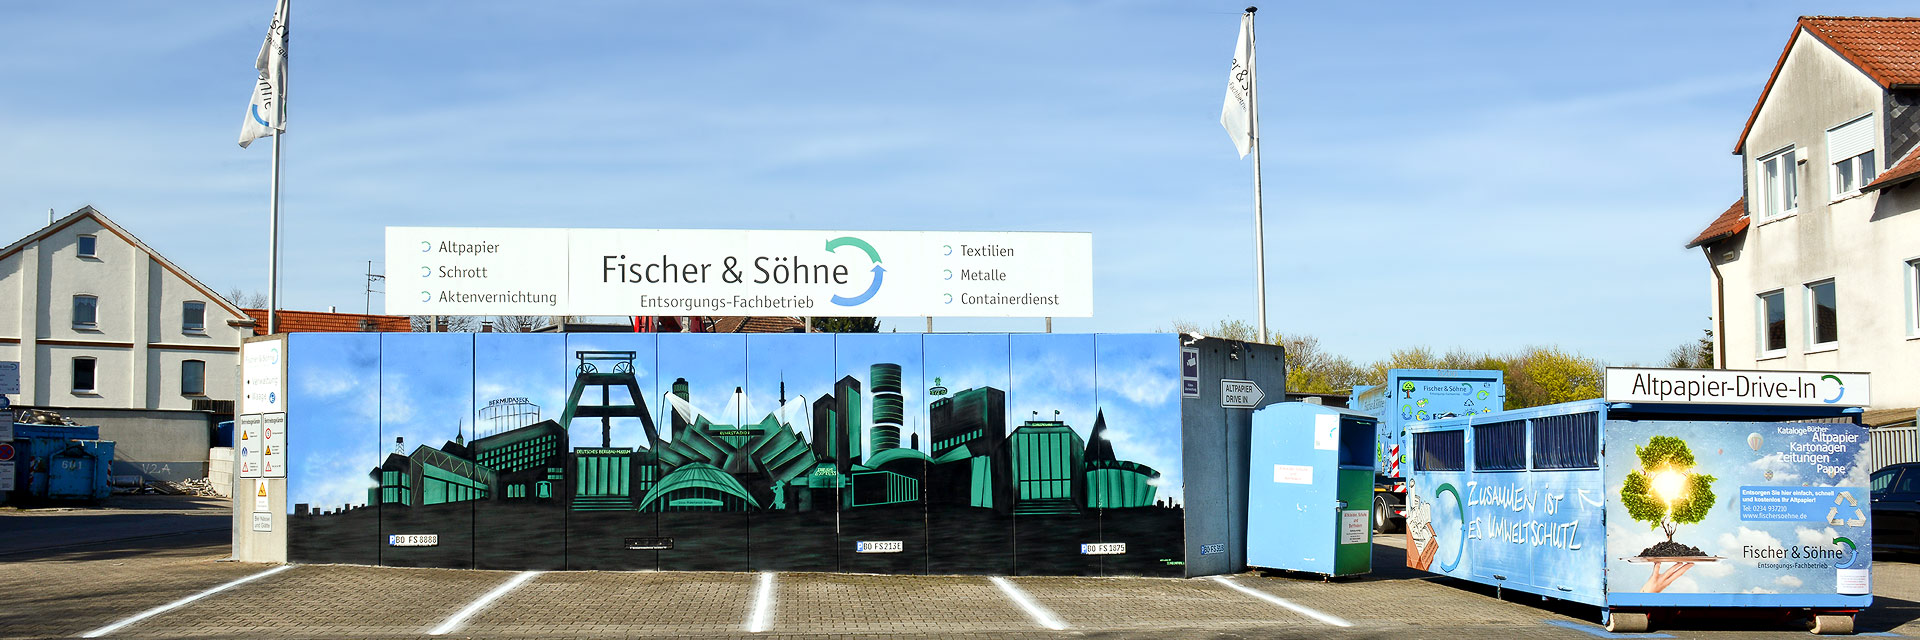 A. Fischer & Söhne – Entsorgungs-Fachbetrieb in Bochum